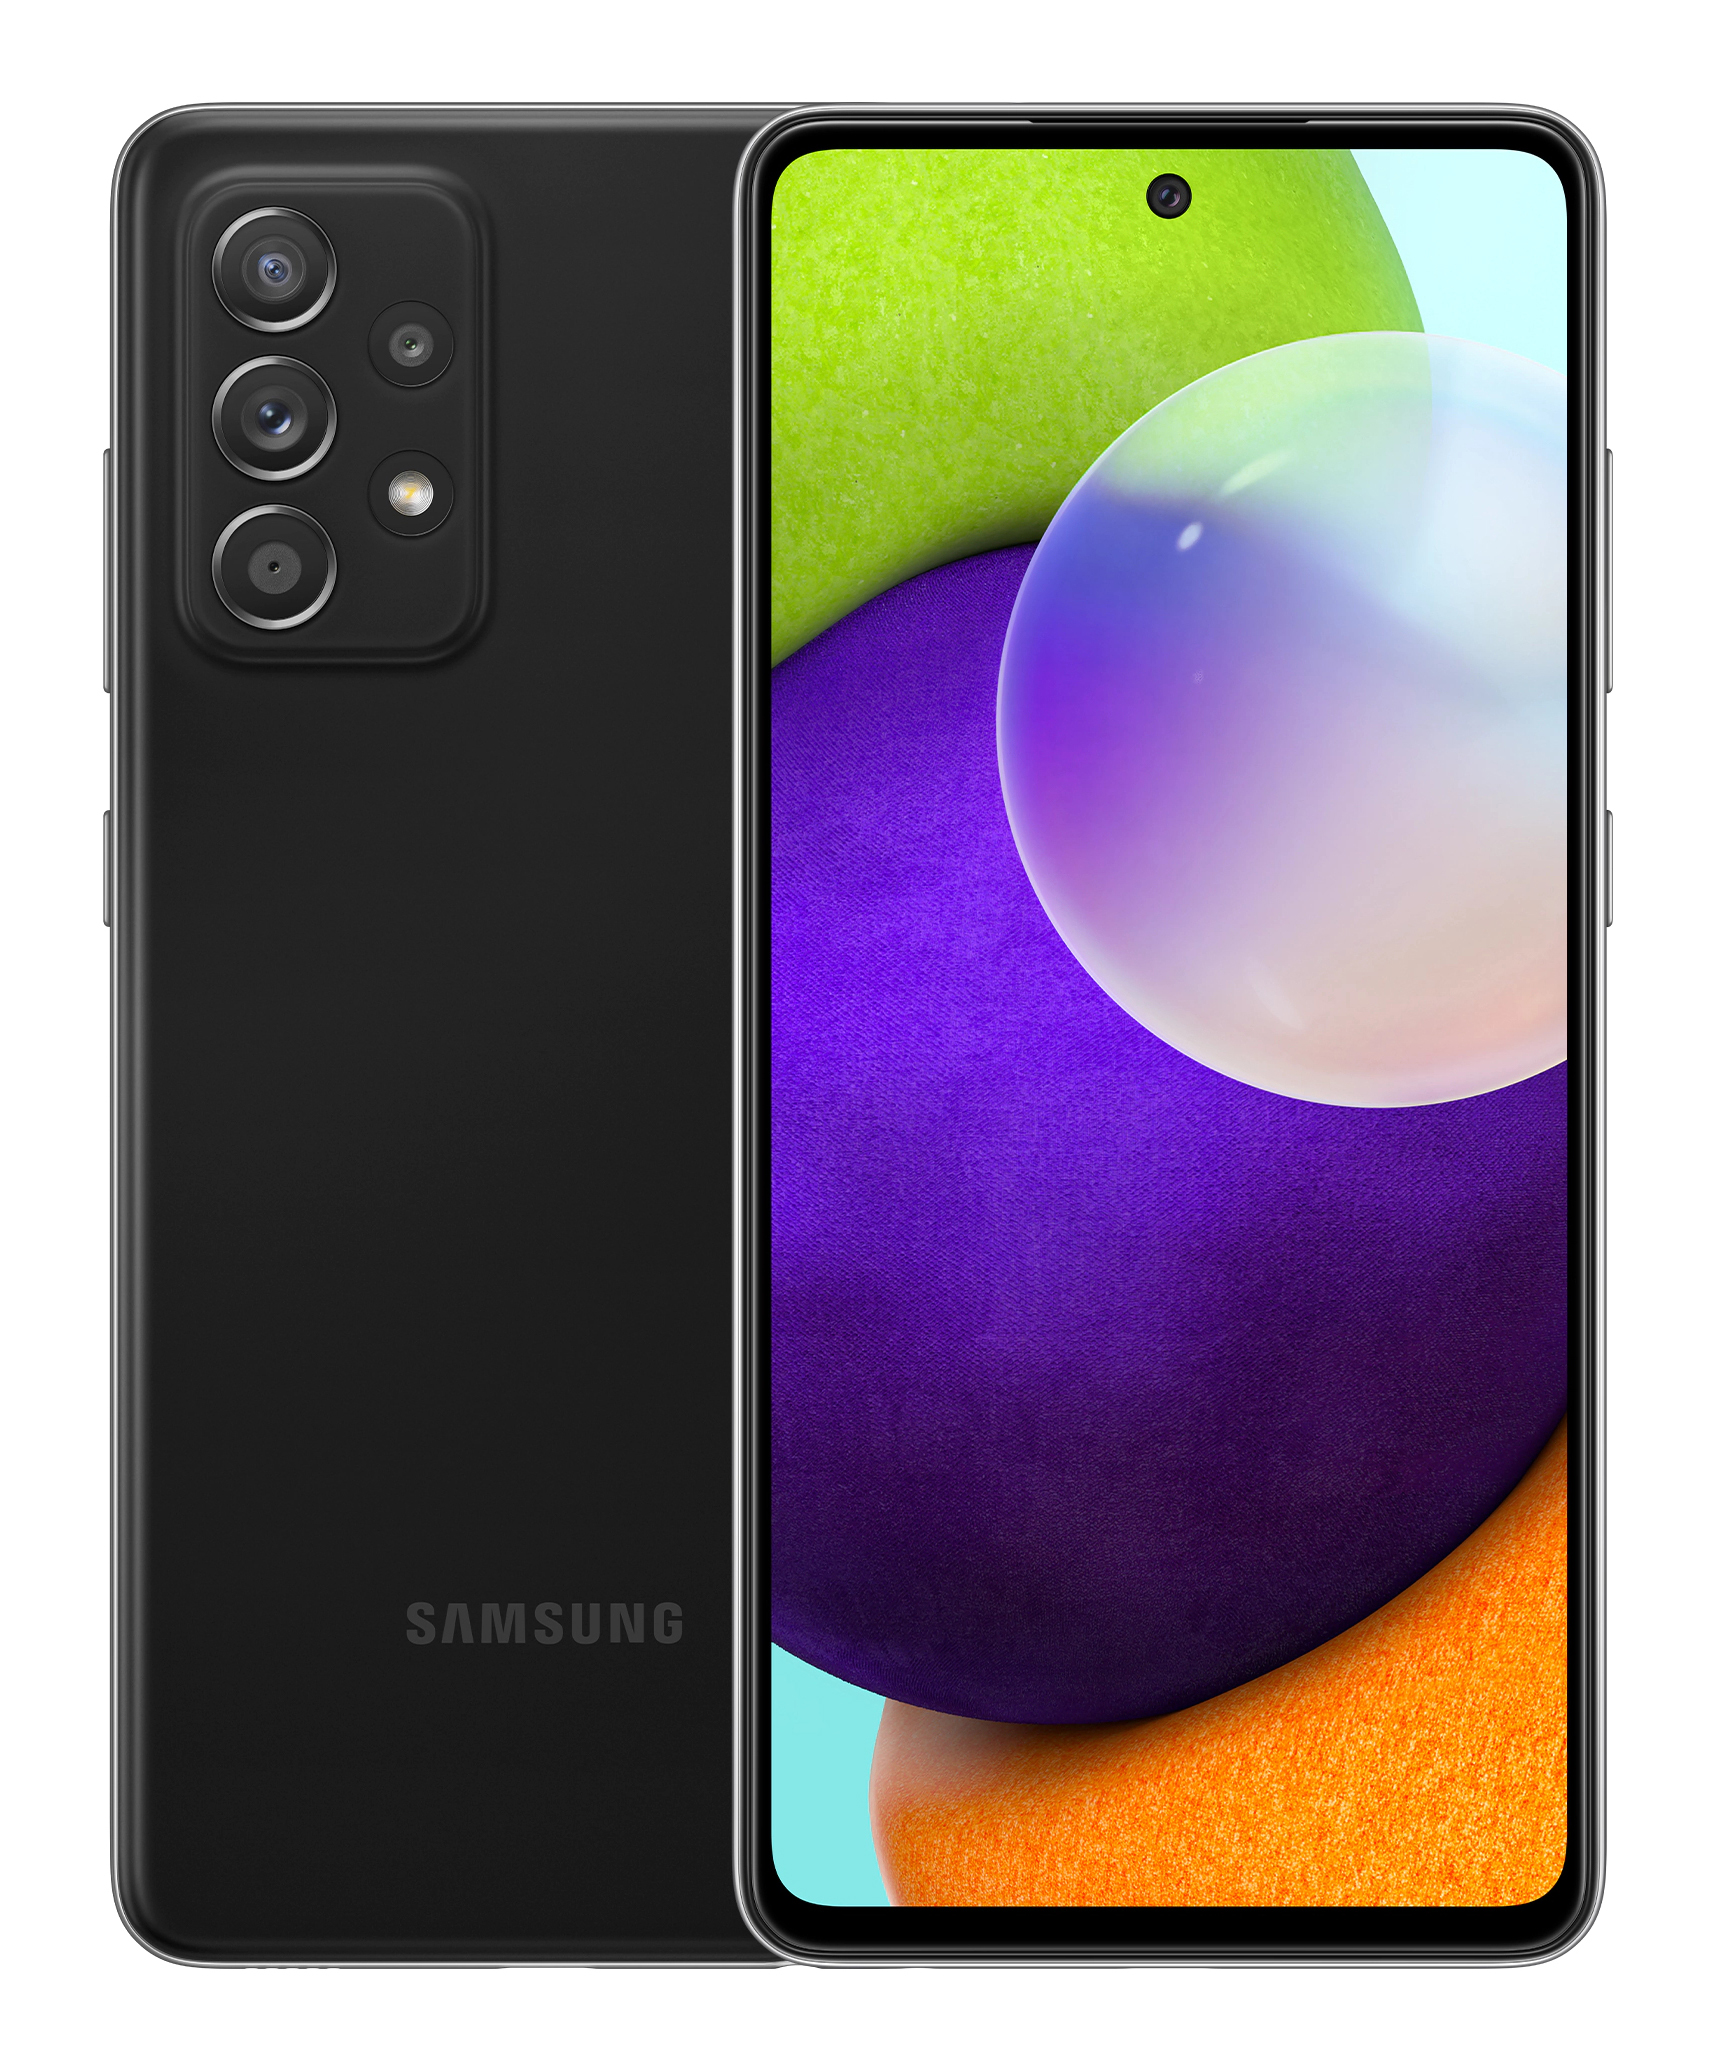 Samsung Galaxy A52 4G 128 GB / awesome black / (dualsim)